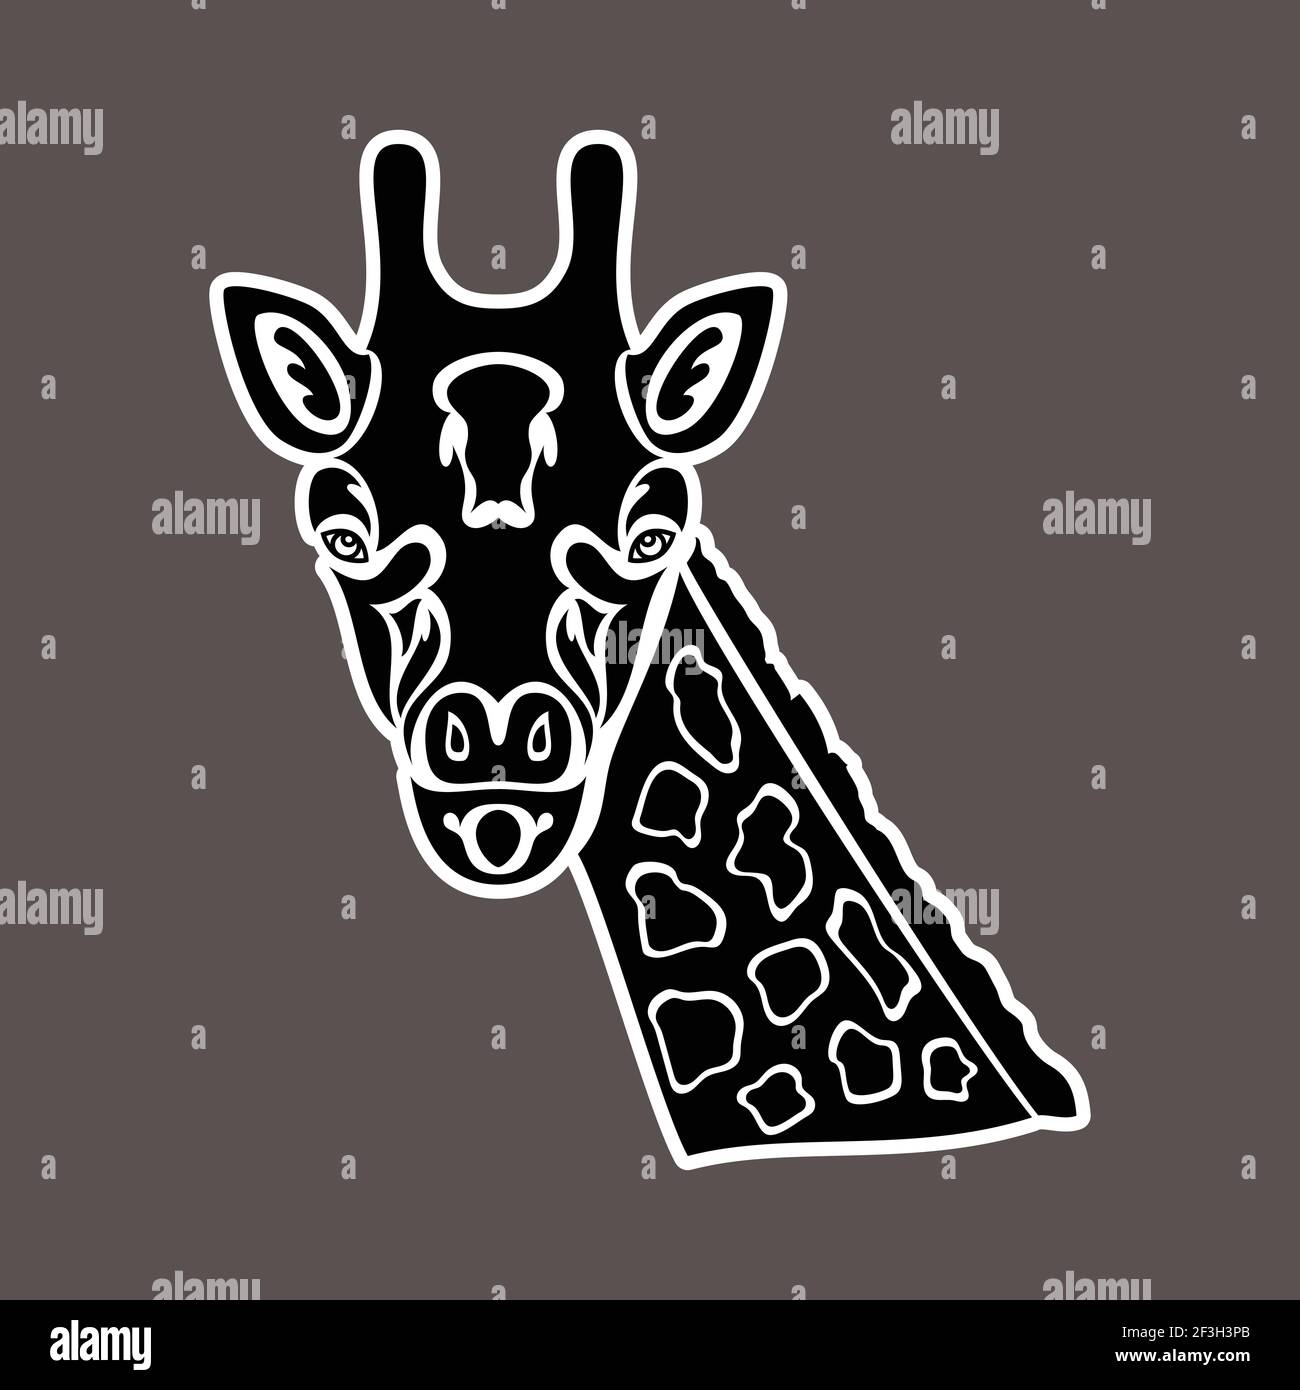 Portrait abstrait dessiné à la main d'une girafe. Autocollant. Illustration vectorielle stylisée isolée sur fond sombre. Illustration de Vecteur